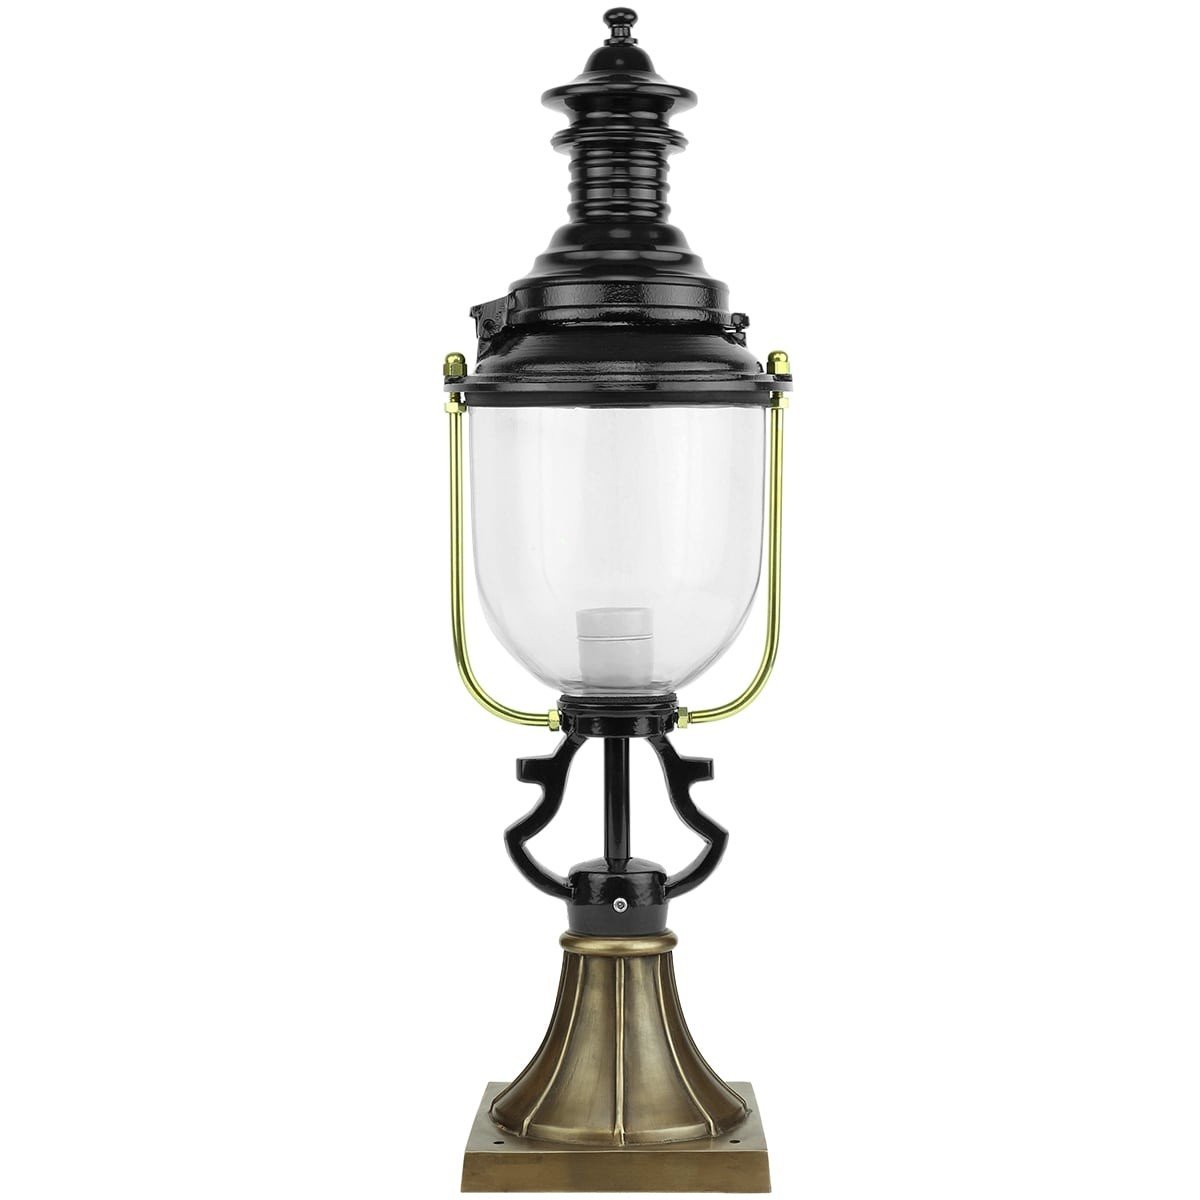 Outdoor Lighting Classic Rural Lantern outdoor Berkenwoude bronze - 71 cm